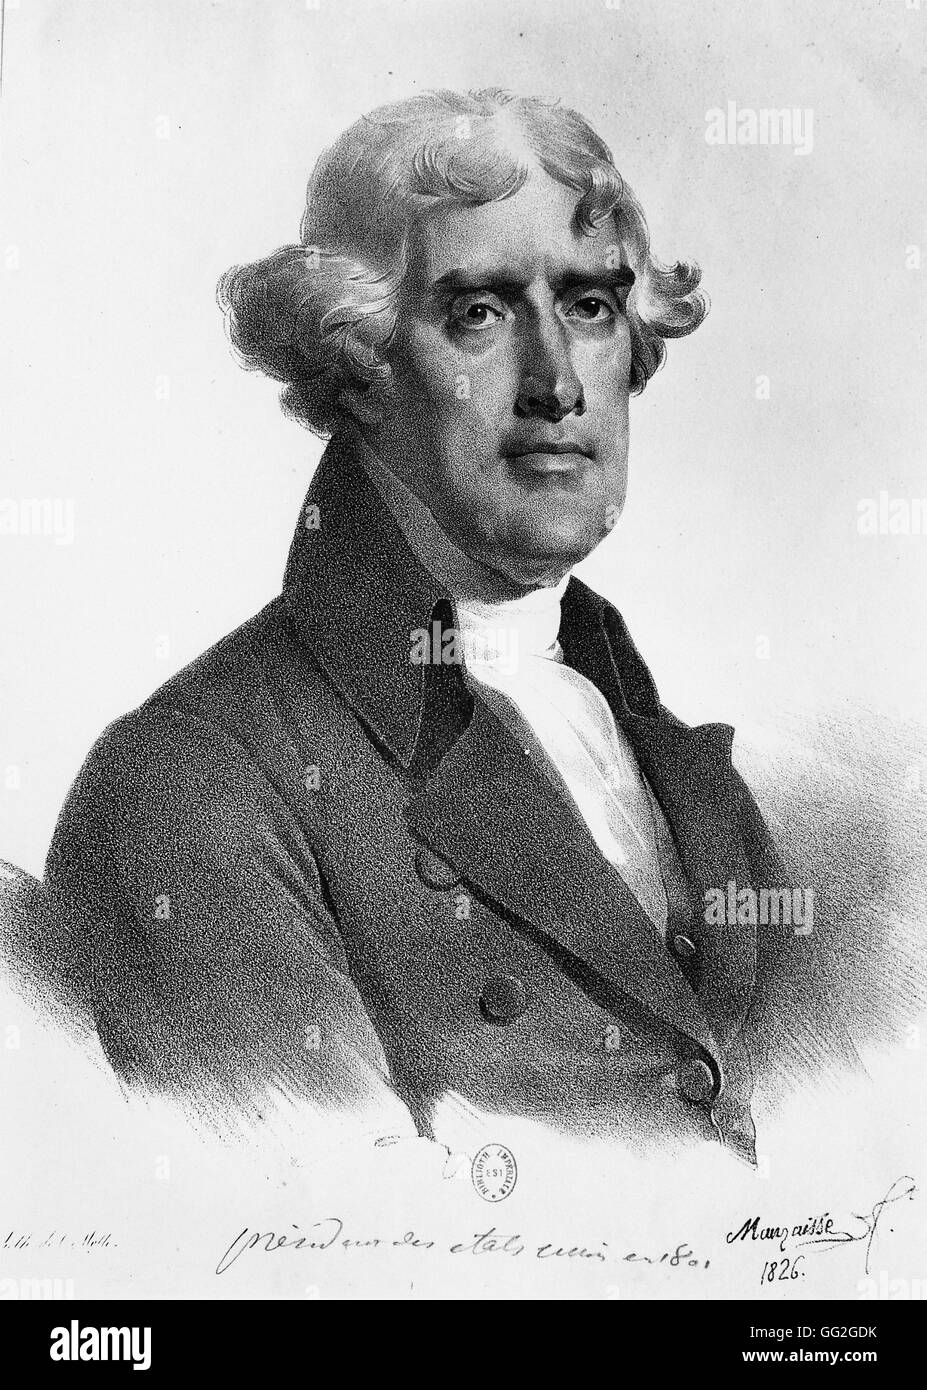 Mauraisse French school Porträt von Thomas Jefferson, Präsident der Vereinigten Staaten von Amerika von 1801 bis 1809. 1826-Lithographie Stockfoto